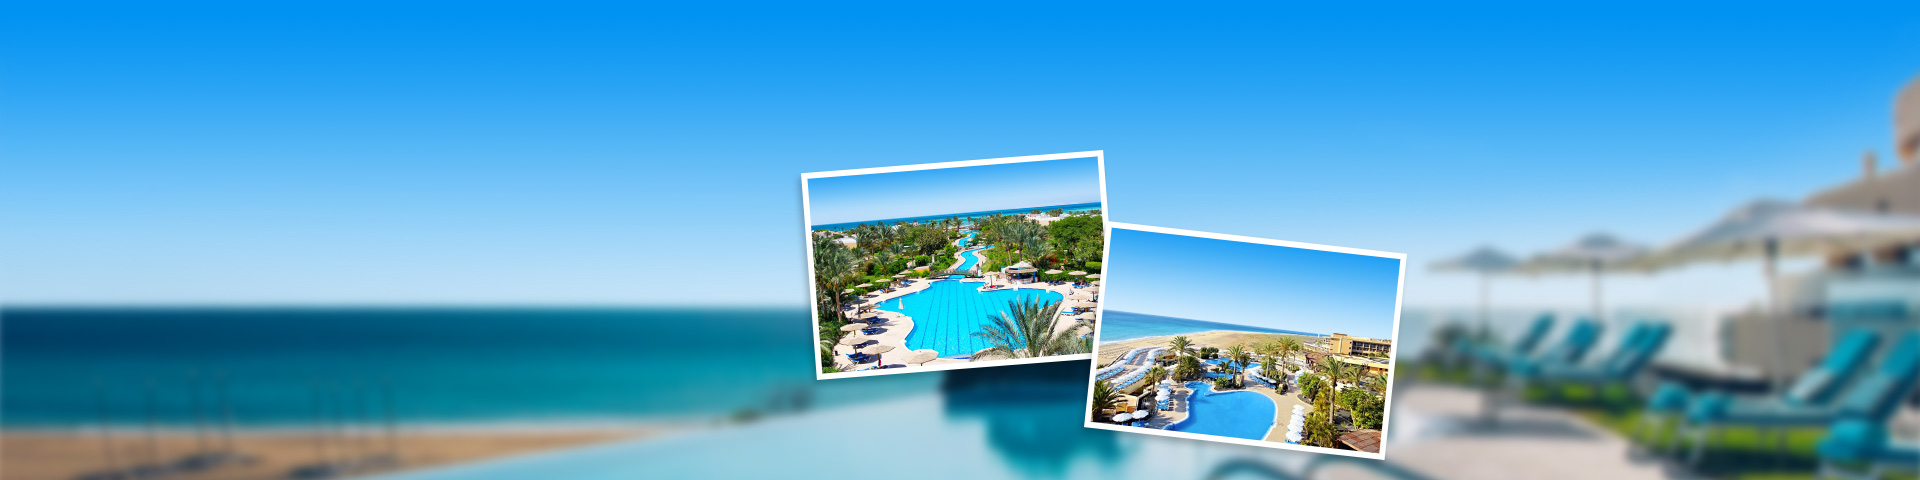 Hotels van touroperator FTI met grote zwembaden